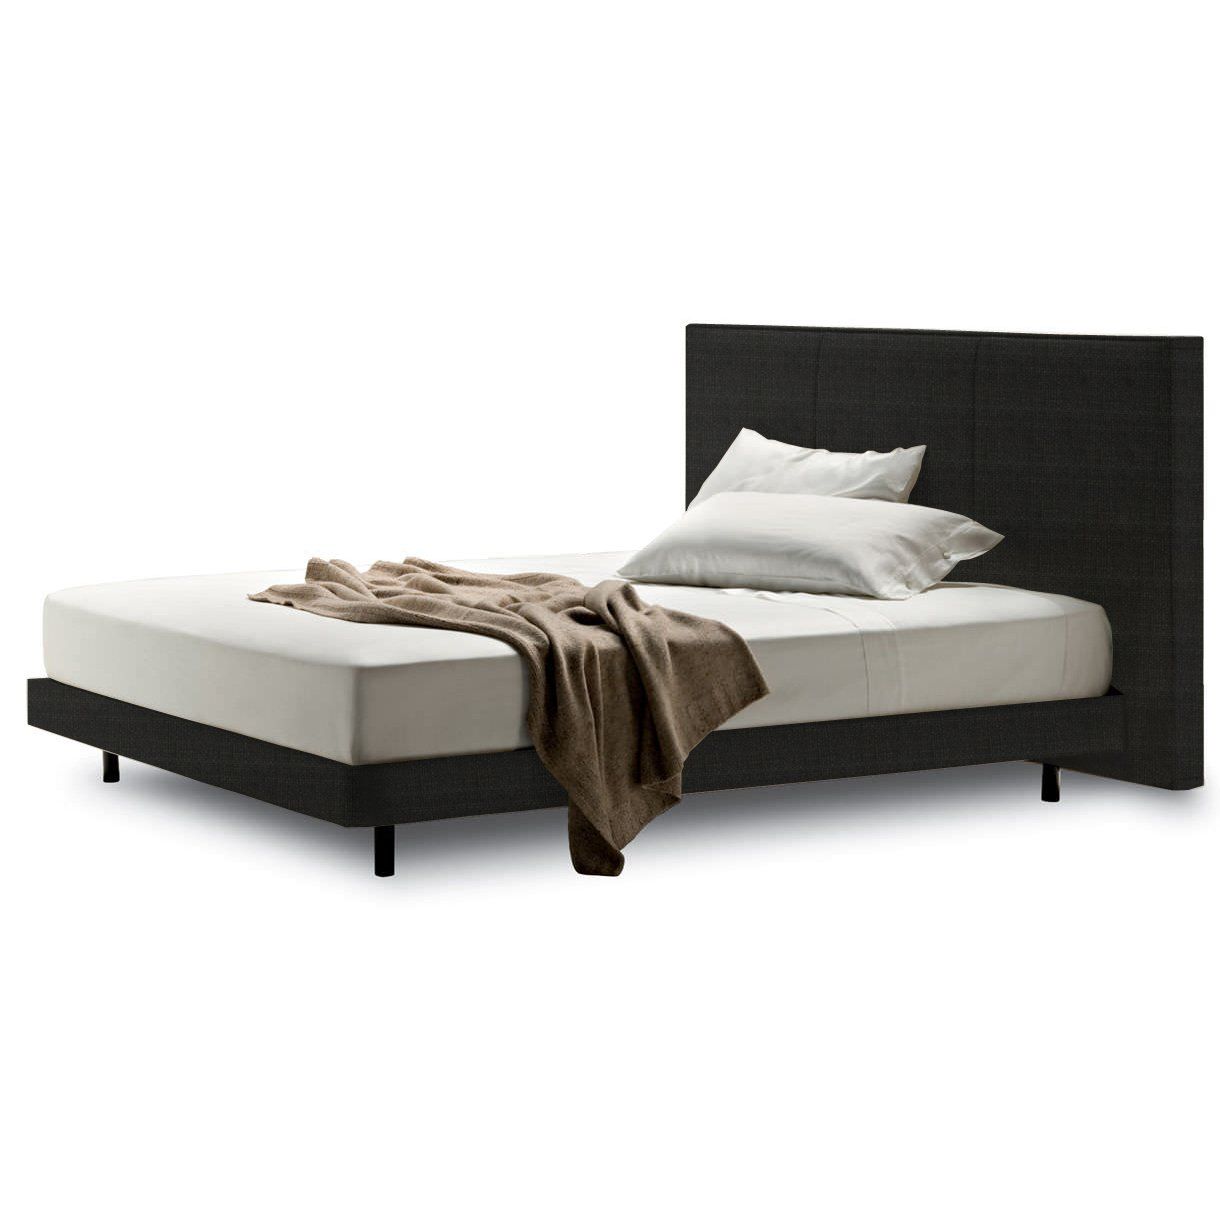 Double bed 180x200 cm dark grey Knoff Grande